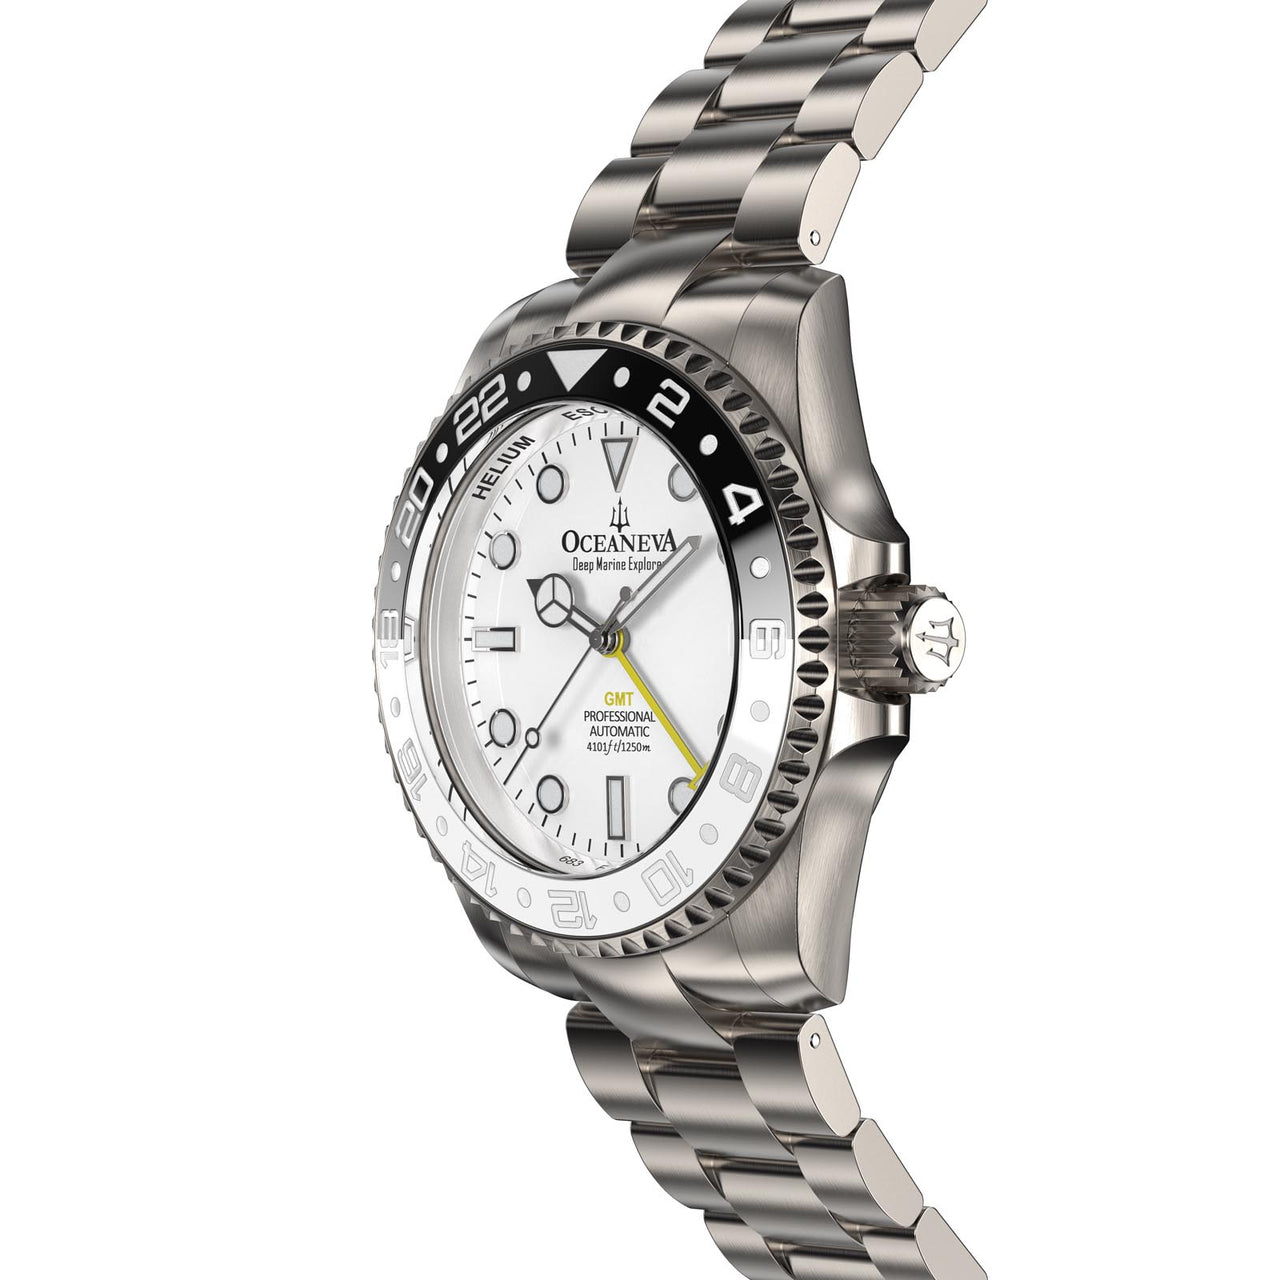 Profile view of Oceaneva Titanium Watch showcasing hypoallergenic material